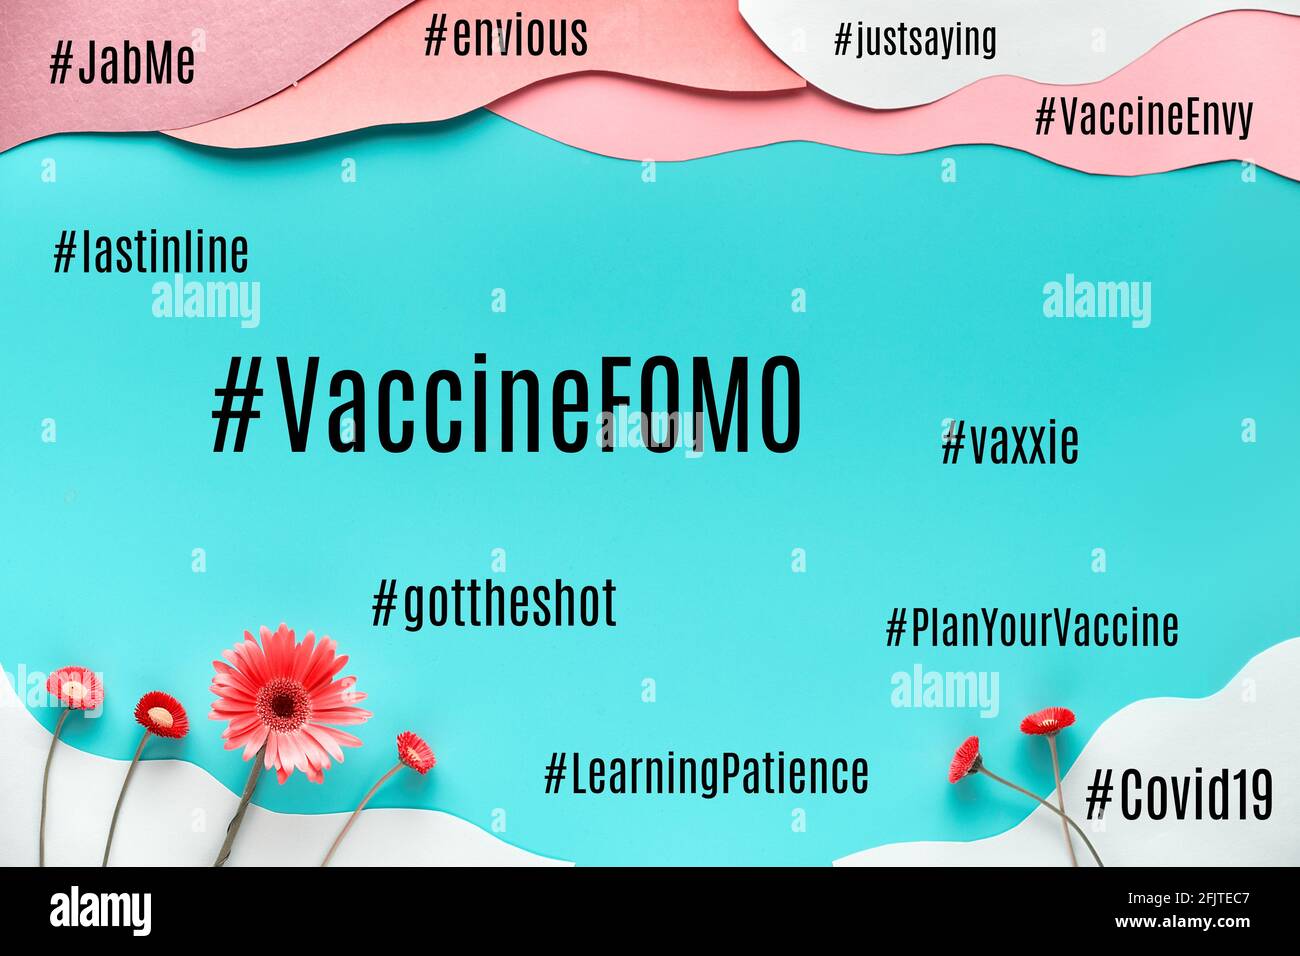 Vaccino FOMO hashtag. Paura di perdere, invidia da vaccini. Incertezza durante le pandemie di Covid-19. Nuvola di concetti e sentimenti correlati Foto Stock